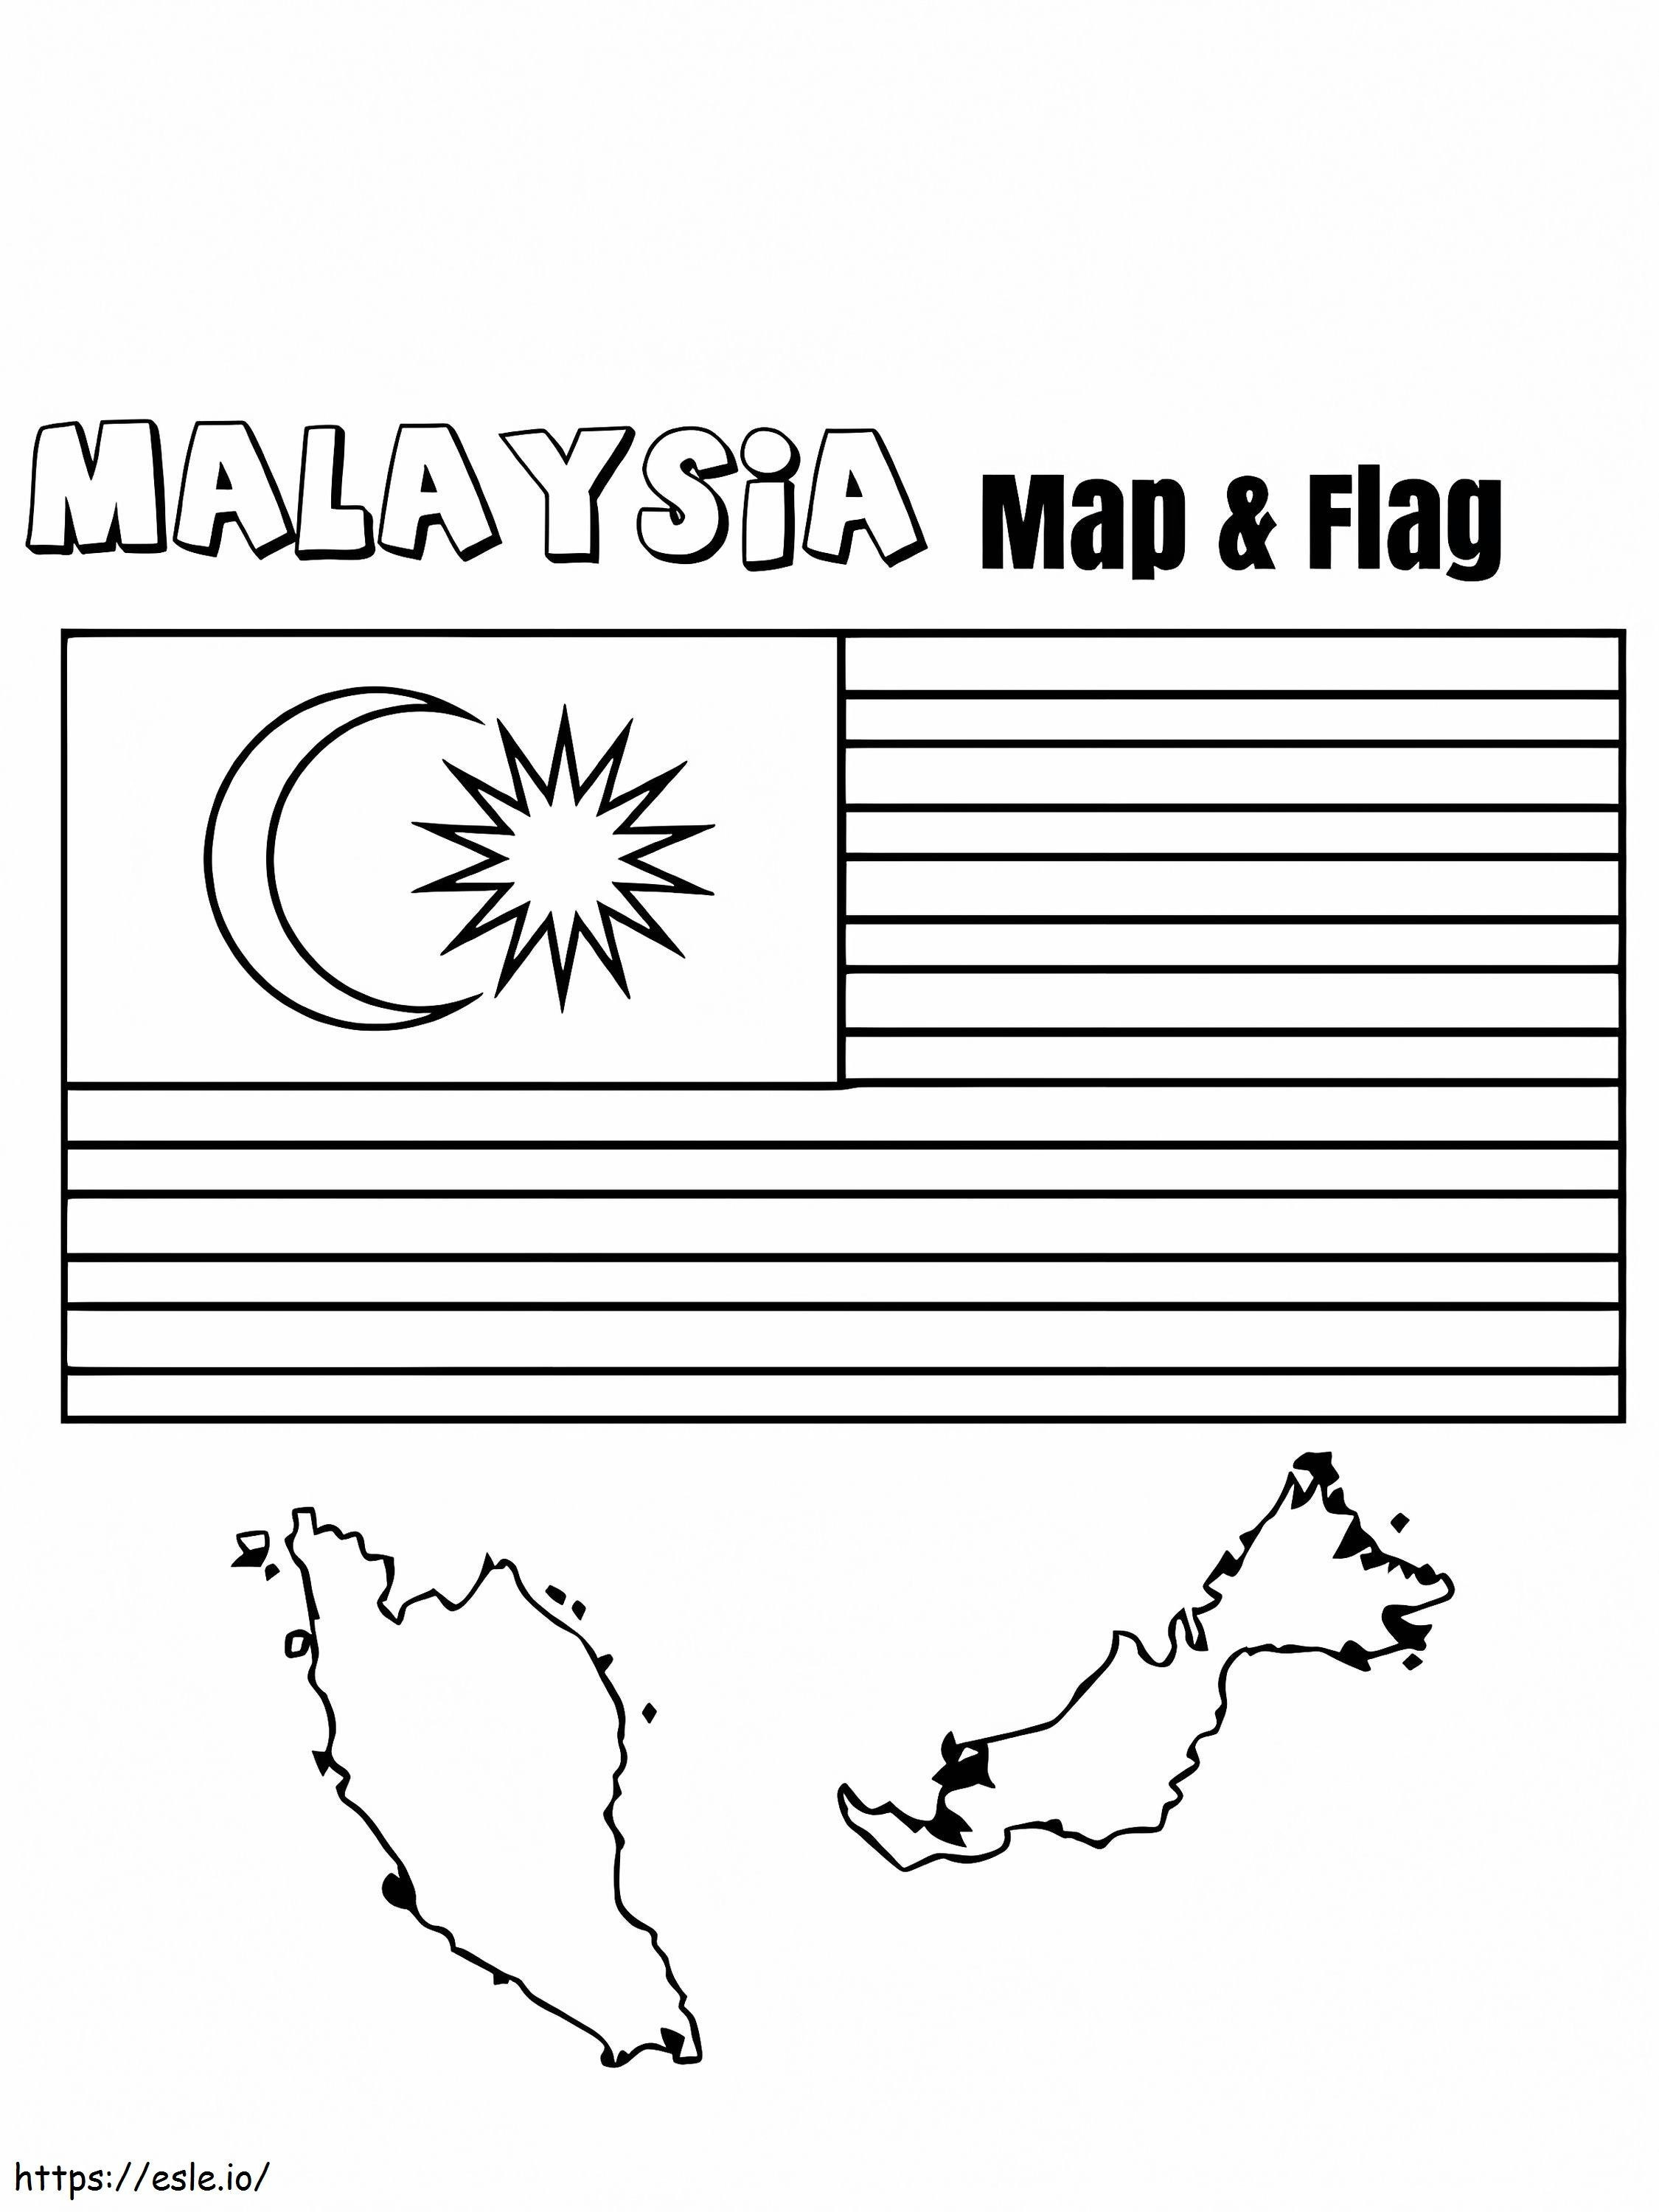 Bandiera e mappa della Malesia da colorare